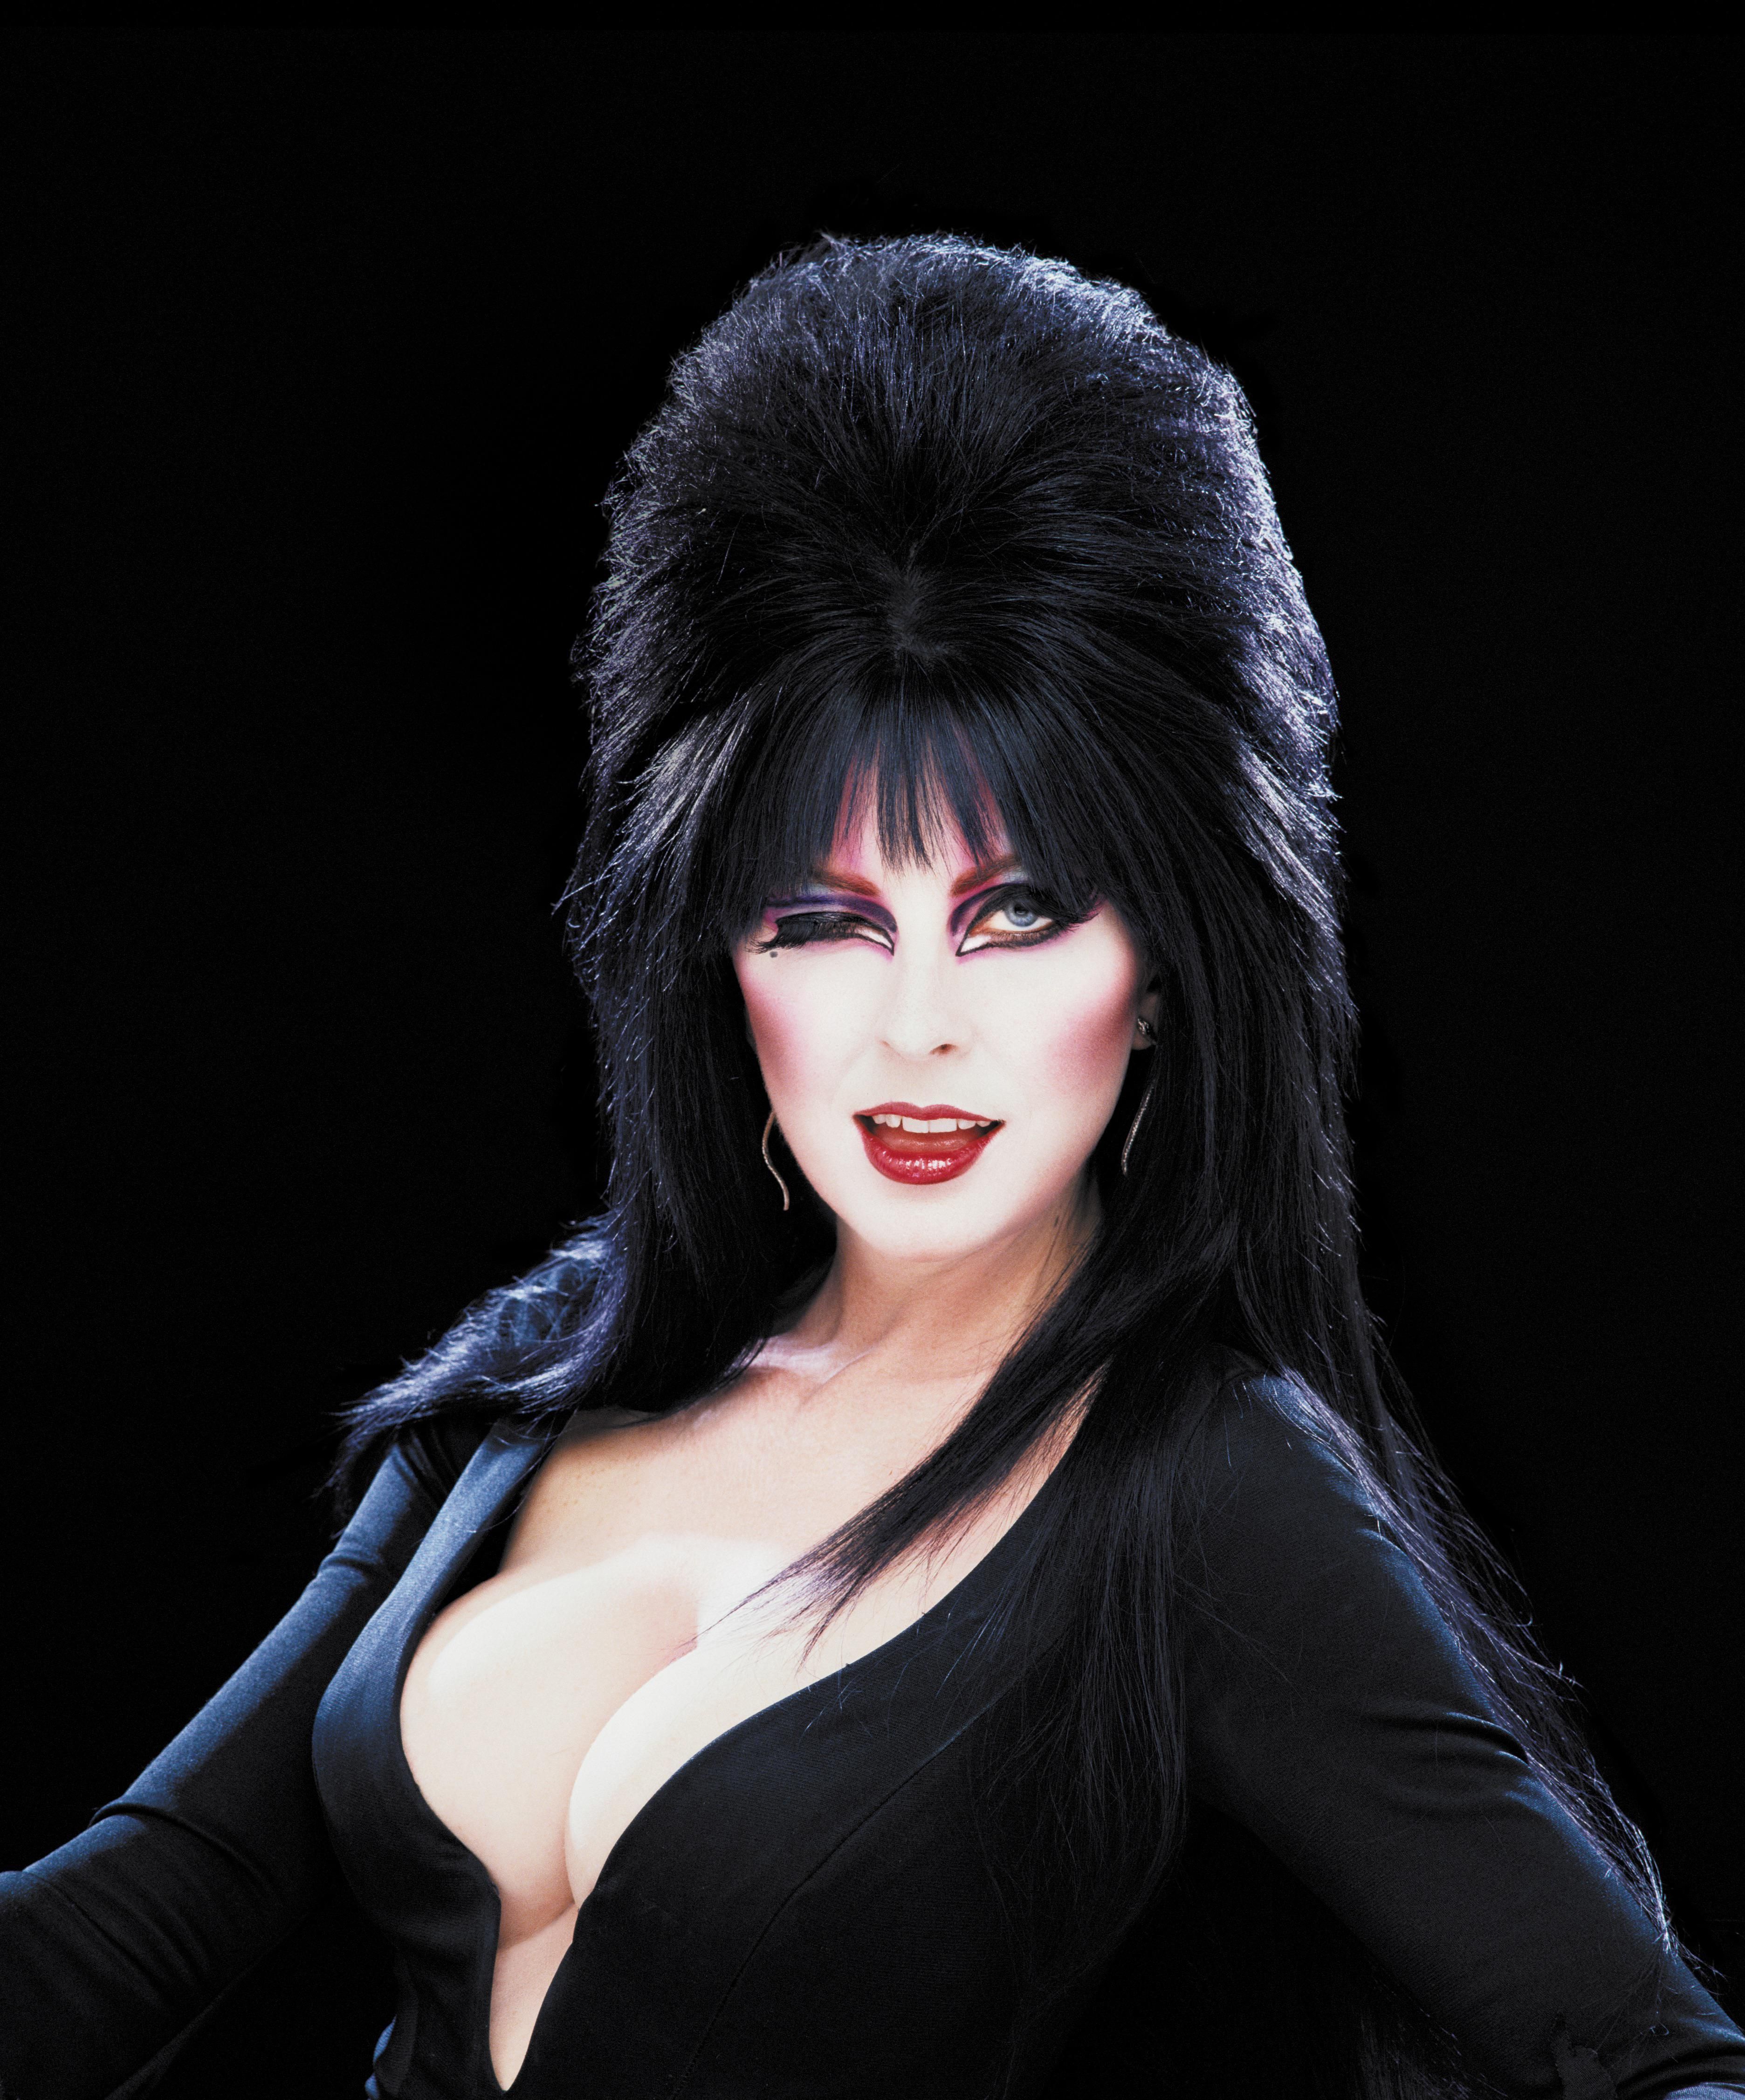 Elvira on Her Memoir